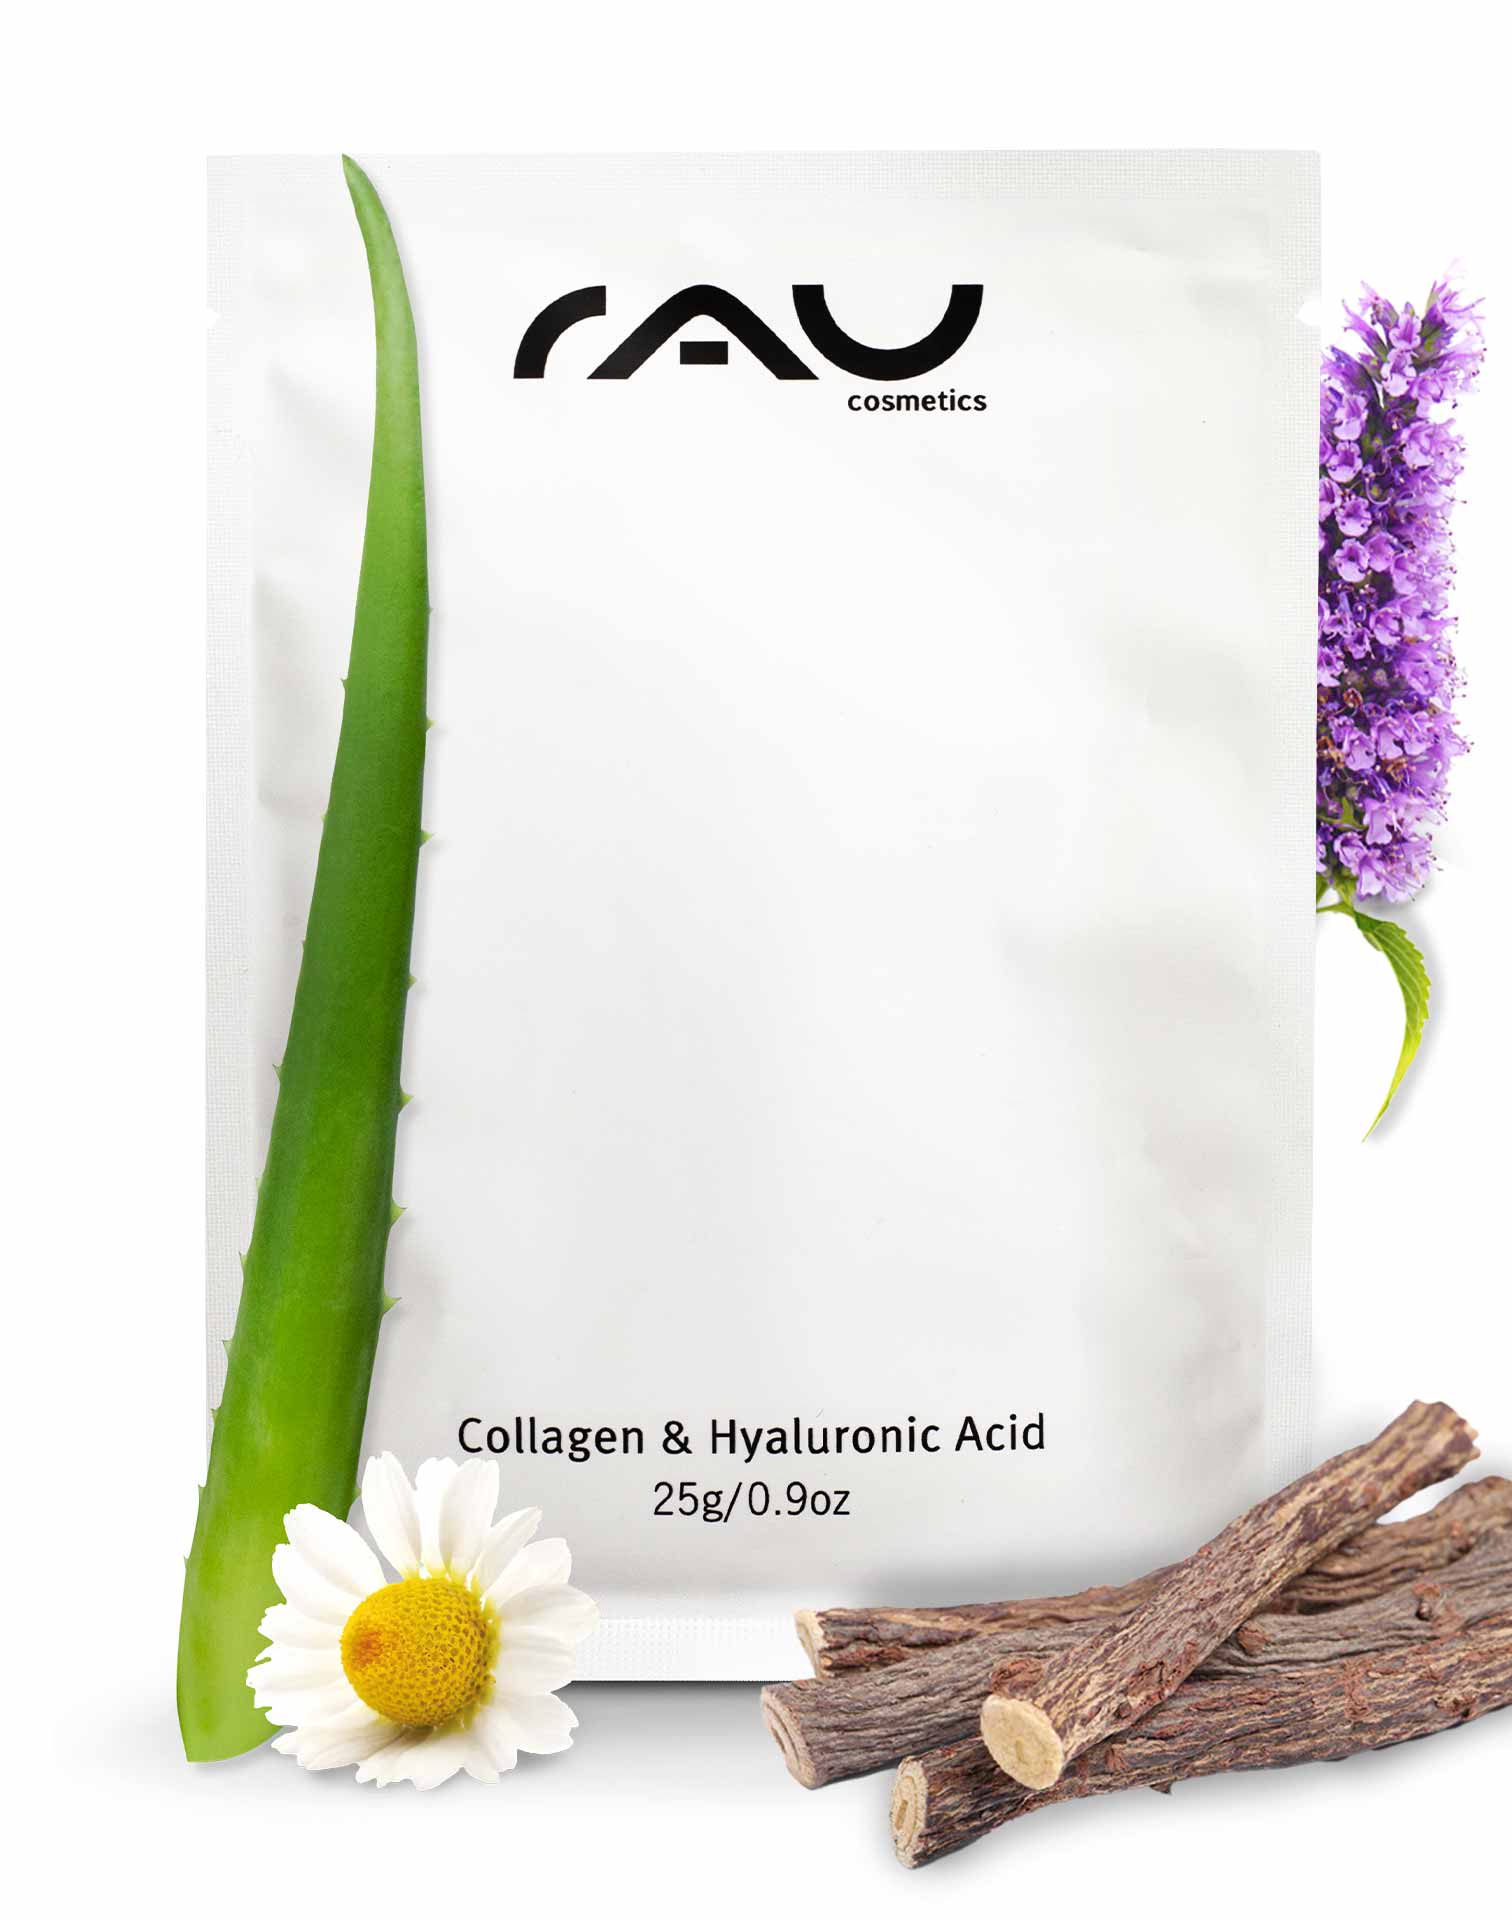 Collagen & Hyaluronic Acid Mask Vliesmaske mit Panthenol